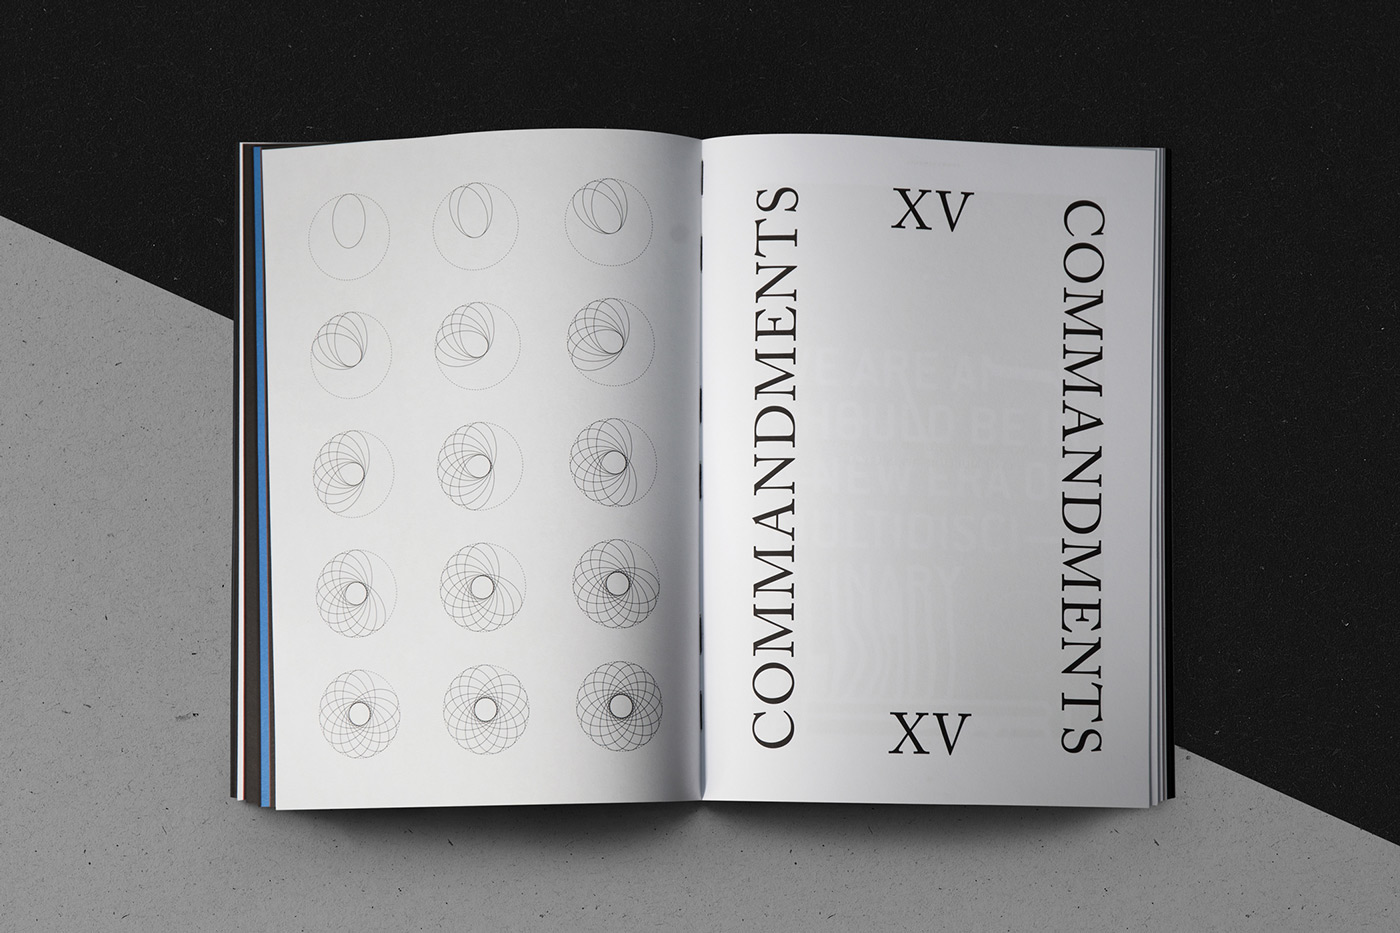 OFFF offfunmasked makeitunmasked Typeface mystical book silkscreen mystery commandment code faith anniversary adobe